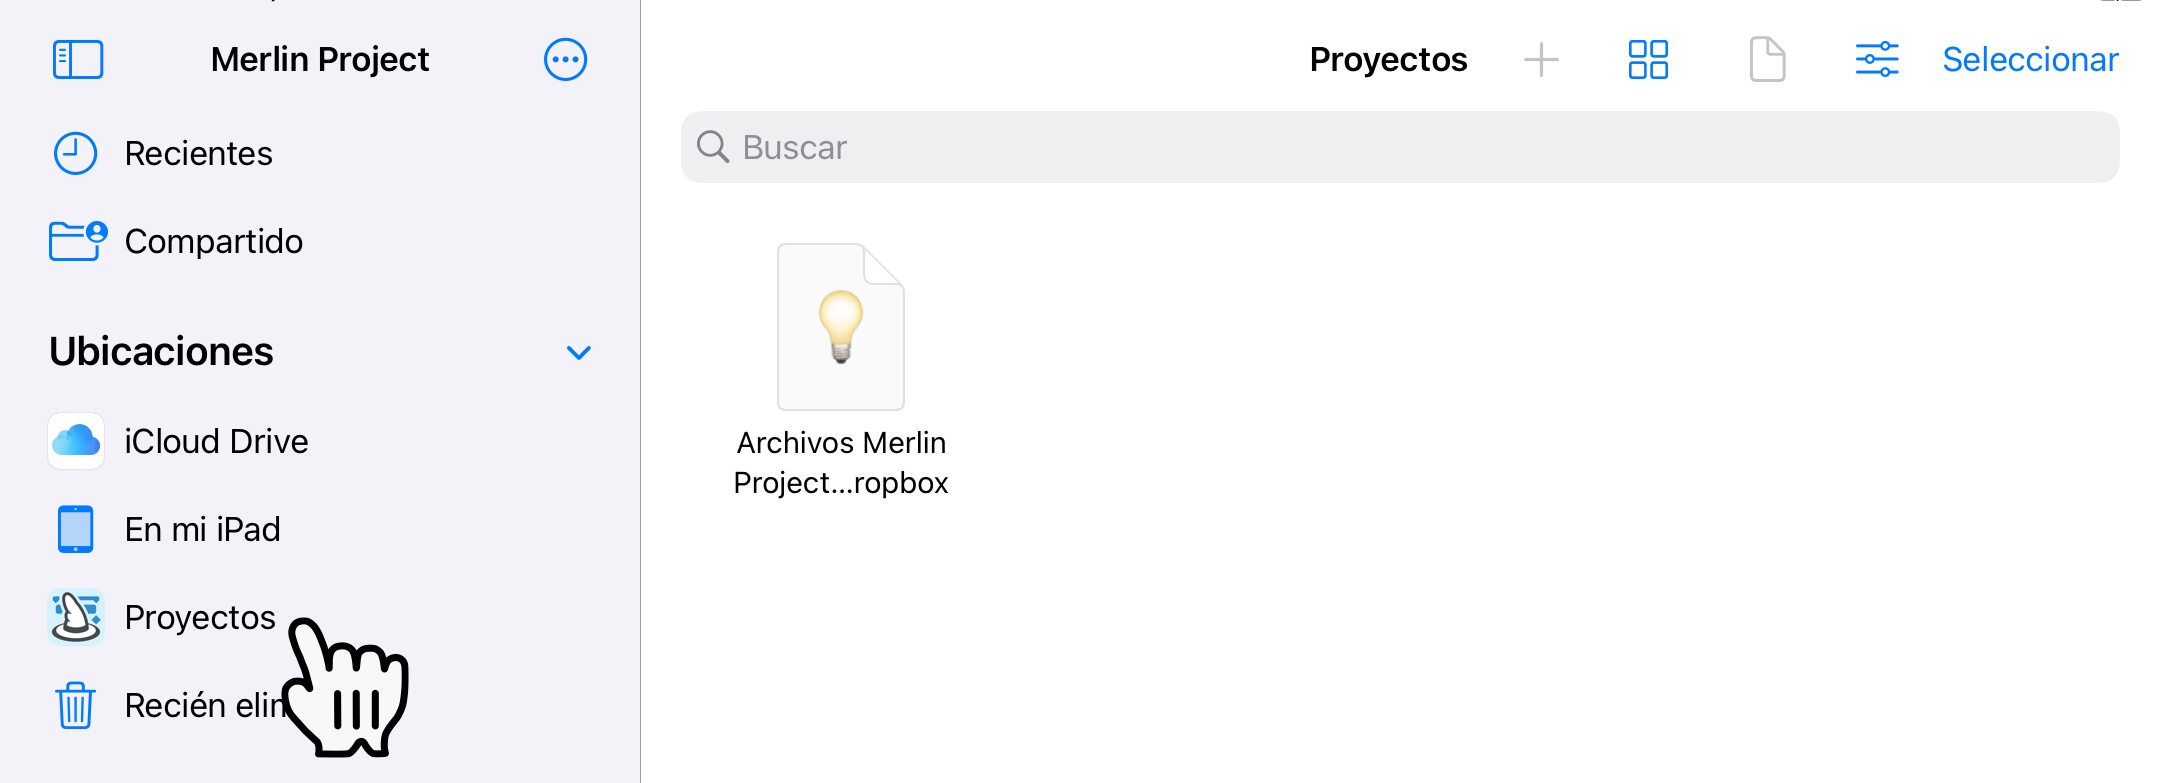 Archivos Merlin Project en Dropbox - iOS